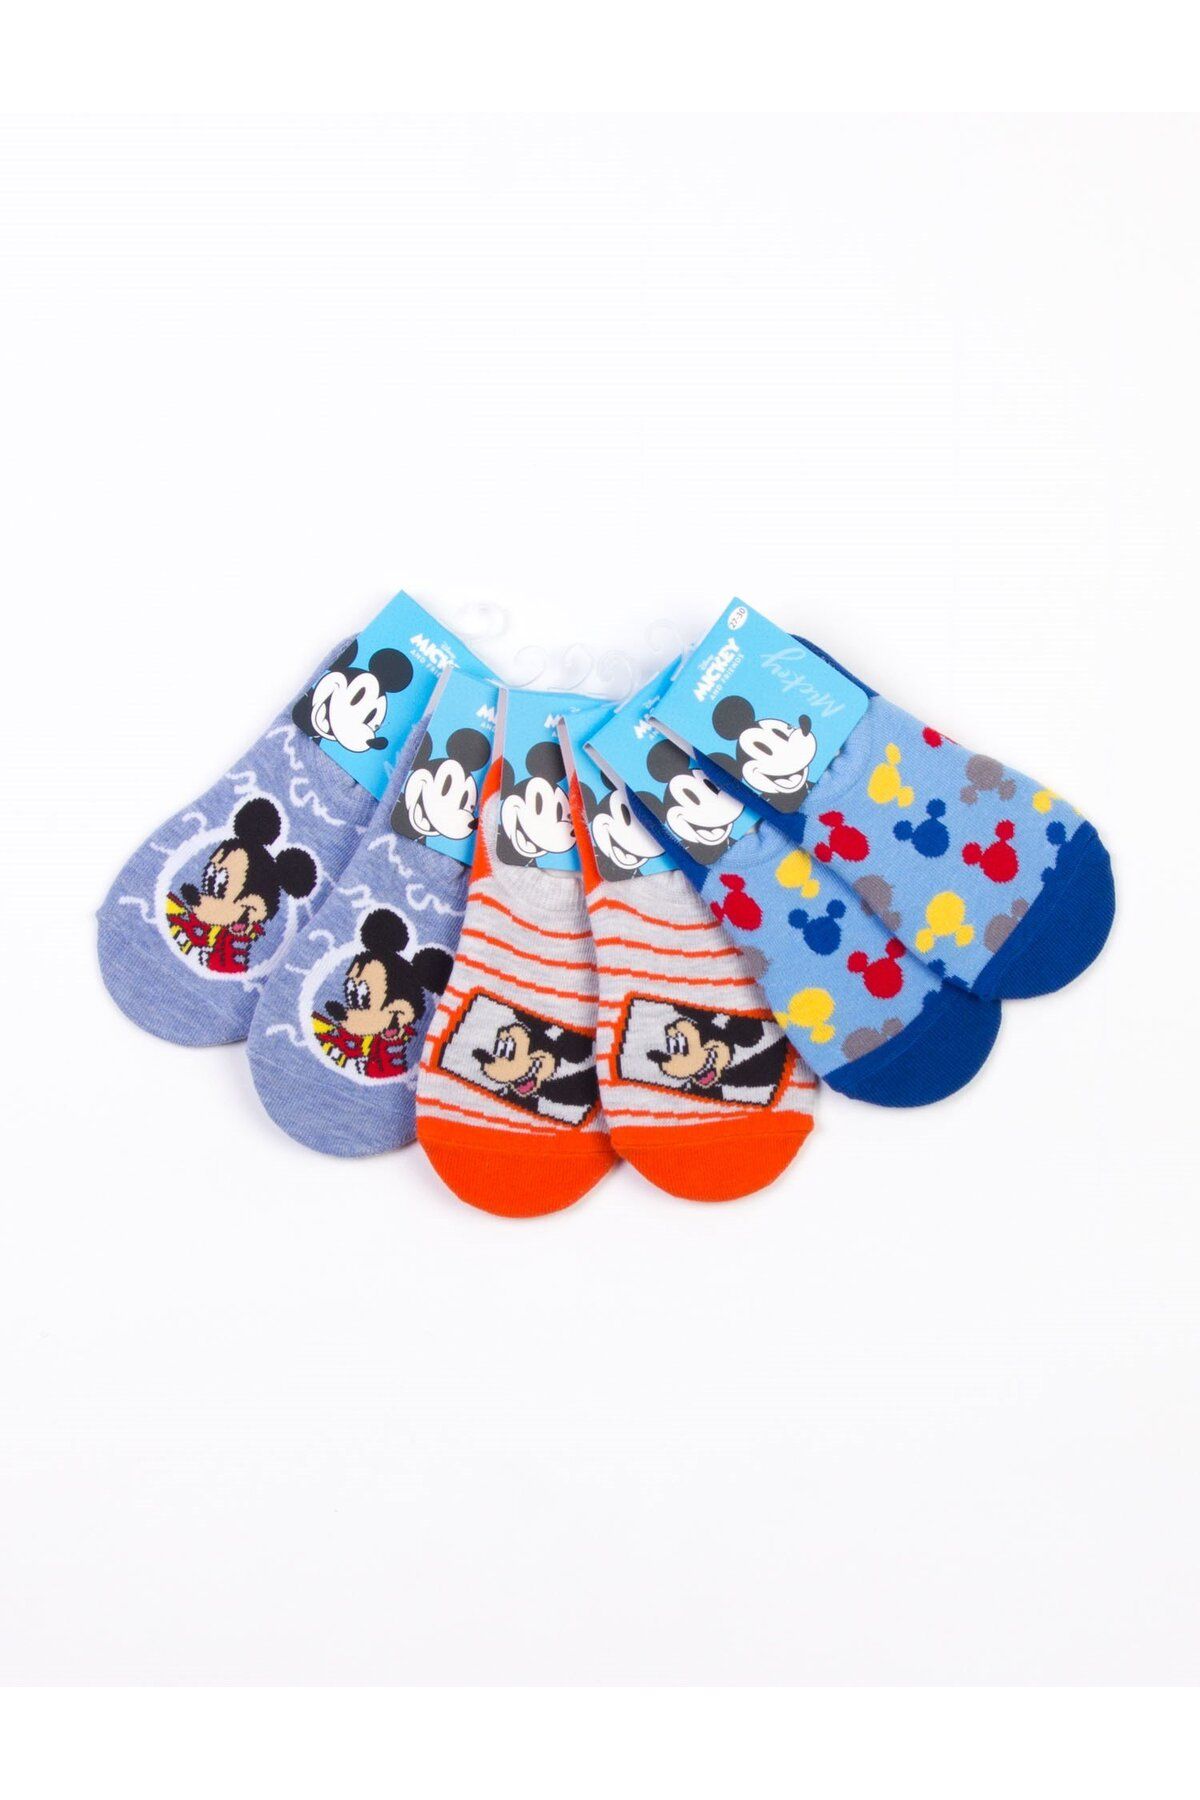 Mickey Mouse Disney Mickey Lisanslı 3 Çift Çocuk Sneakers Çorap 18207